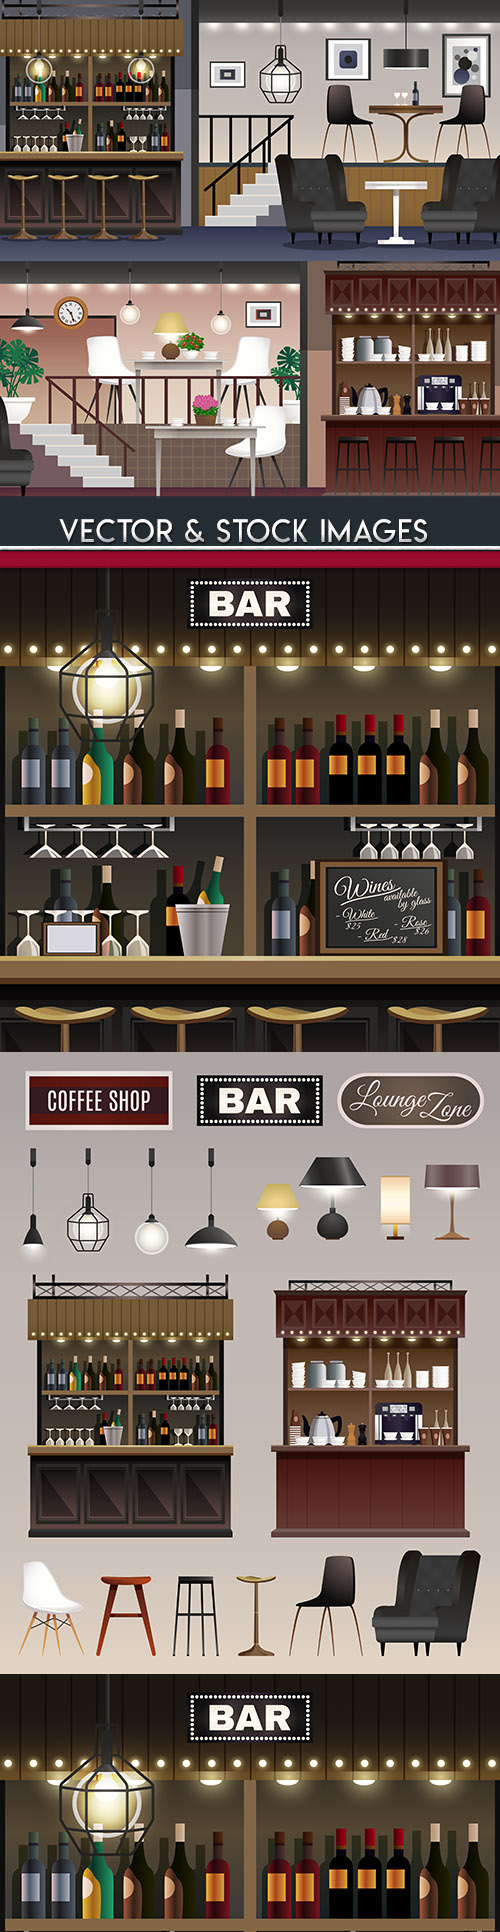 Bar and alcoholic beverages modern restaurant design